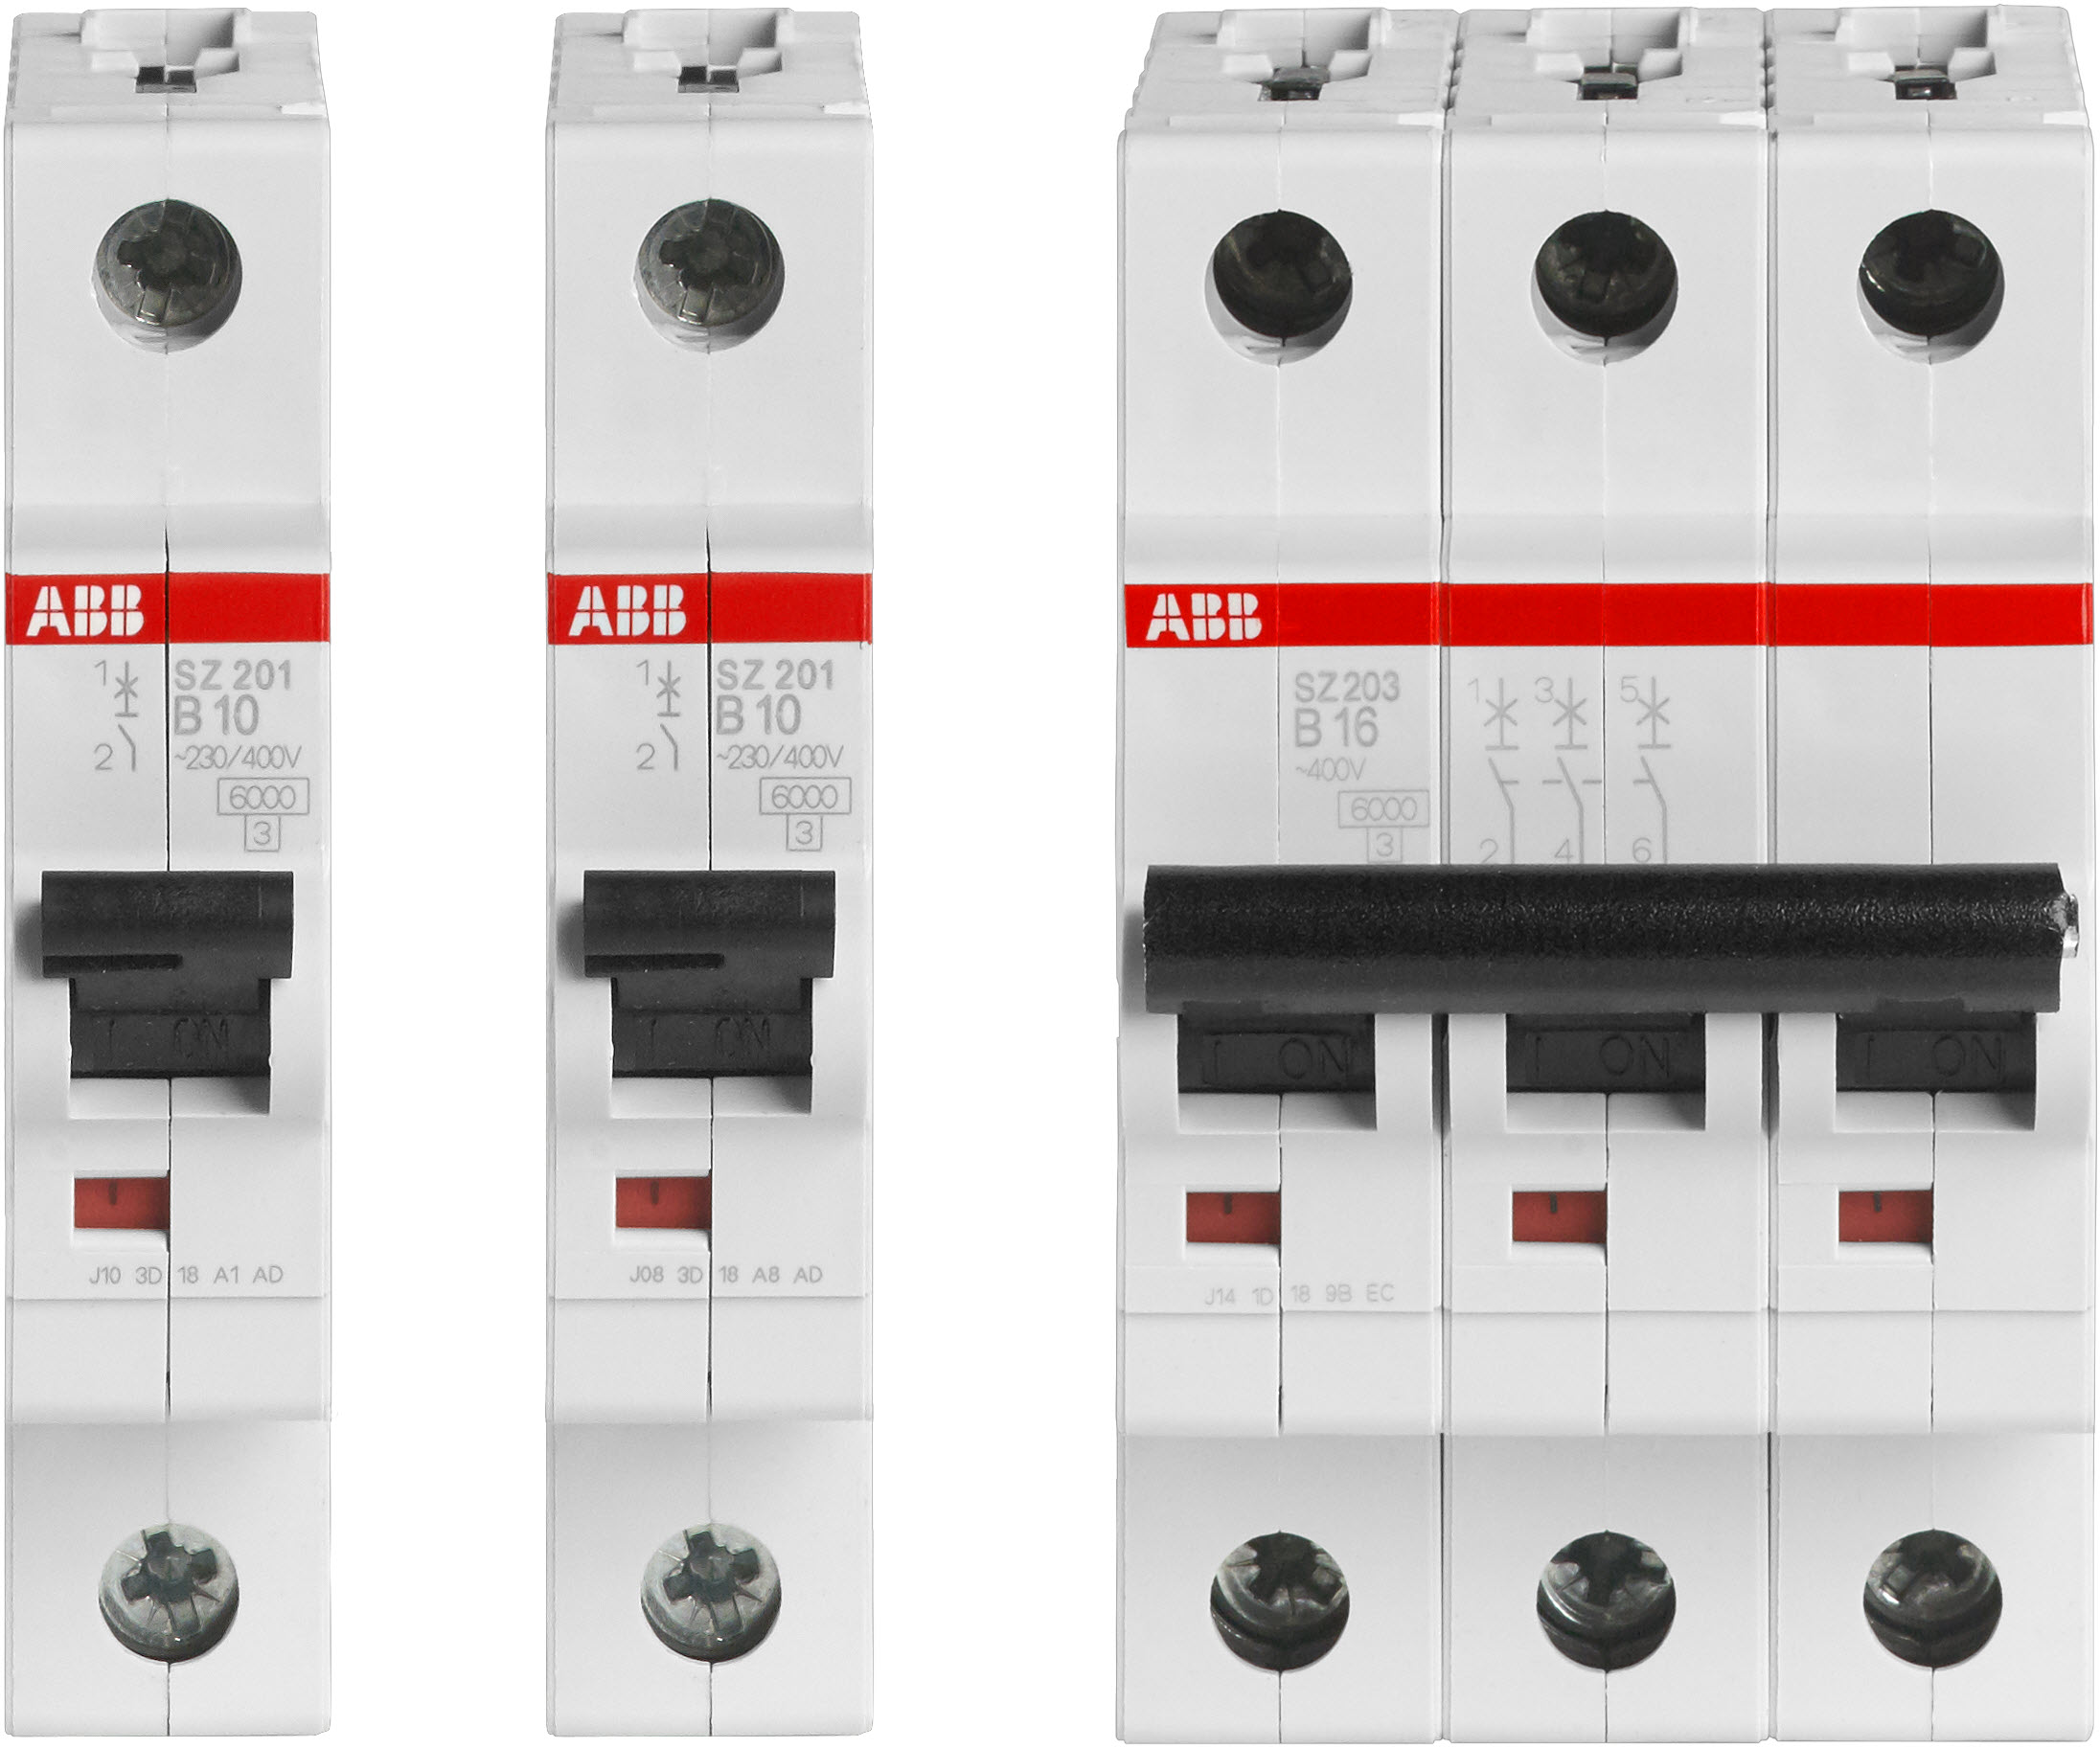 Wyłączniki nadmiarowo-prądowe ABB SZ200: Instalacja pod specjalną ochroną